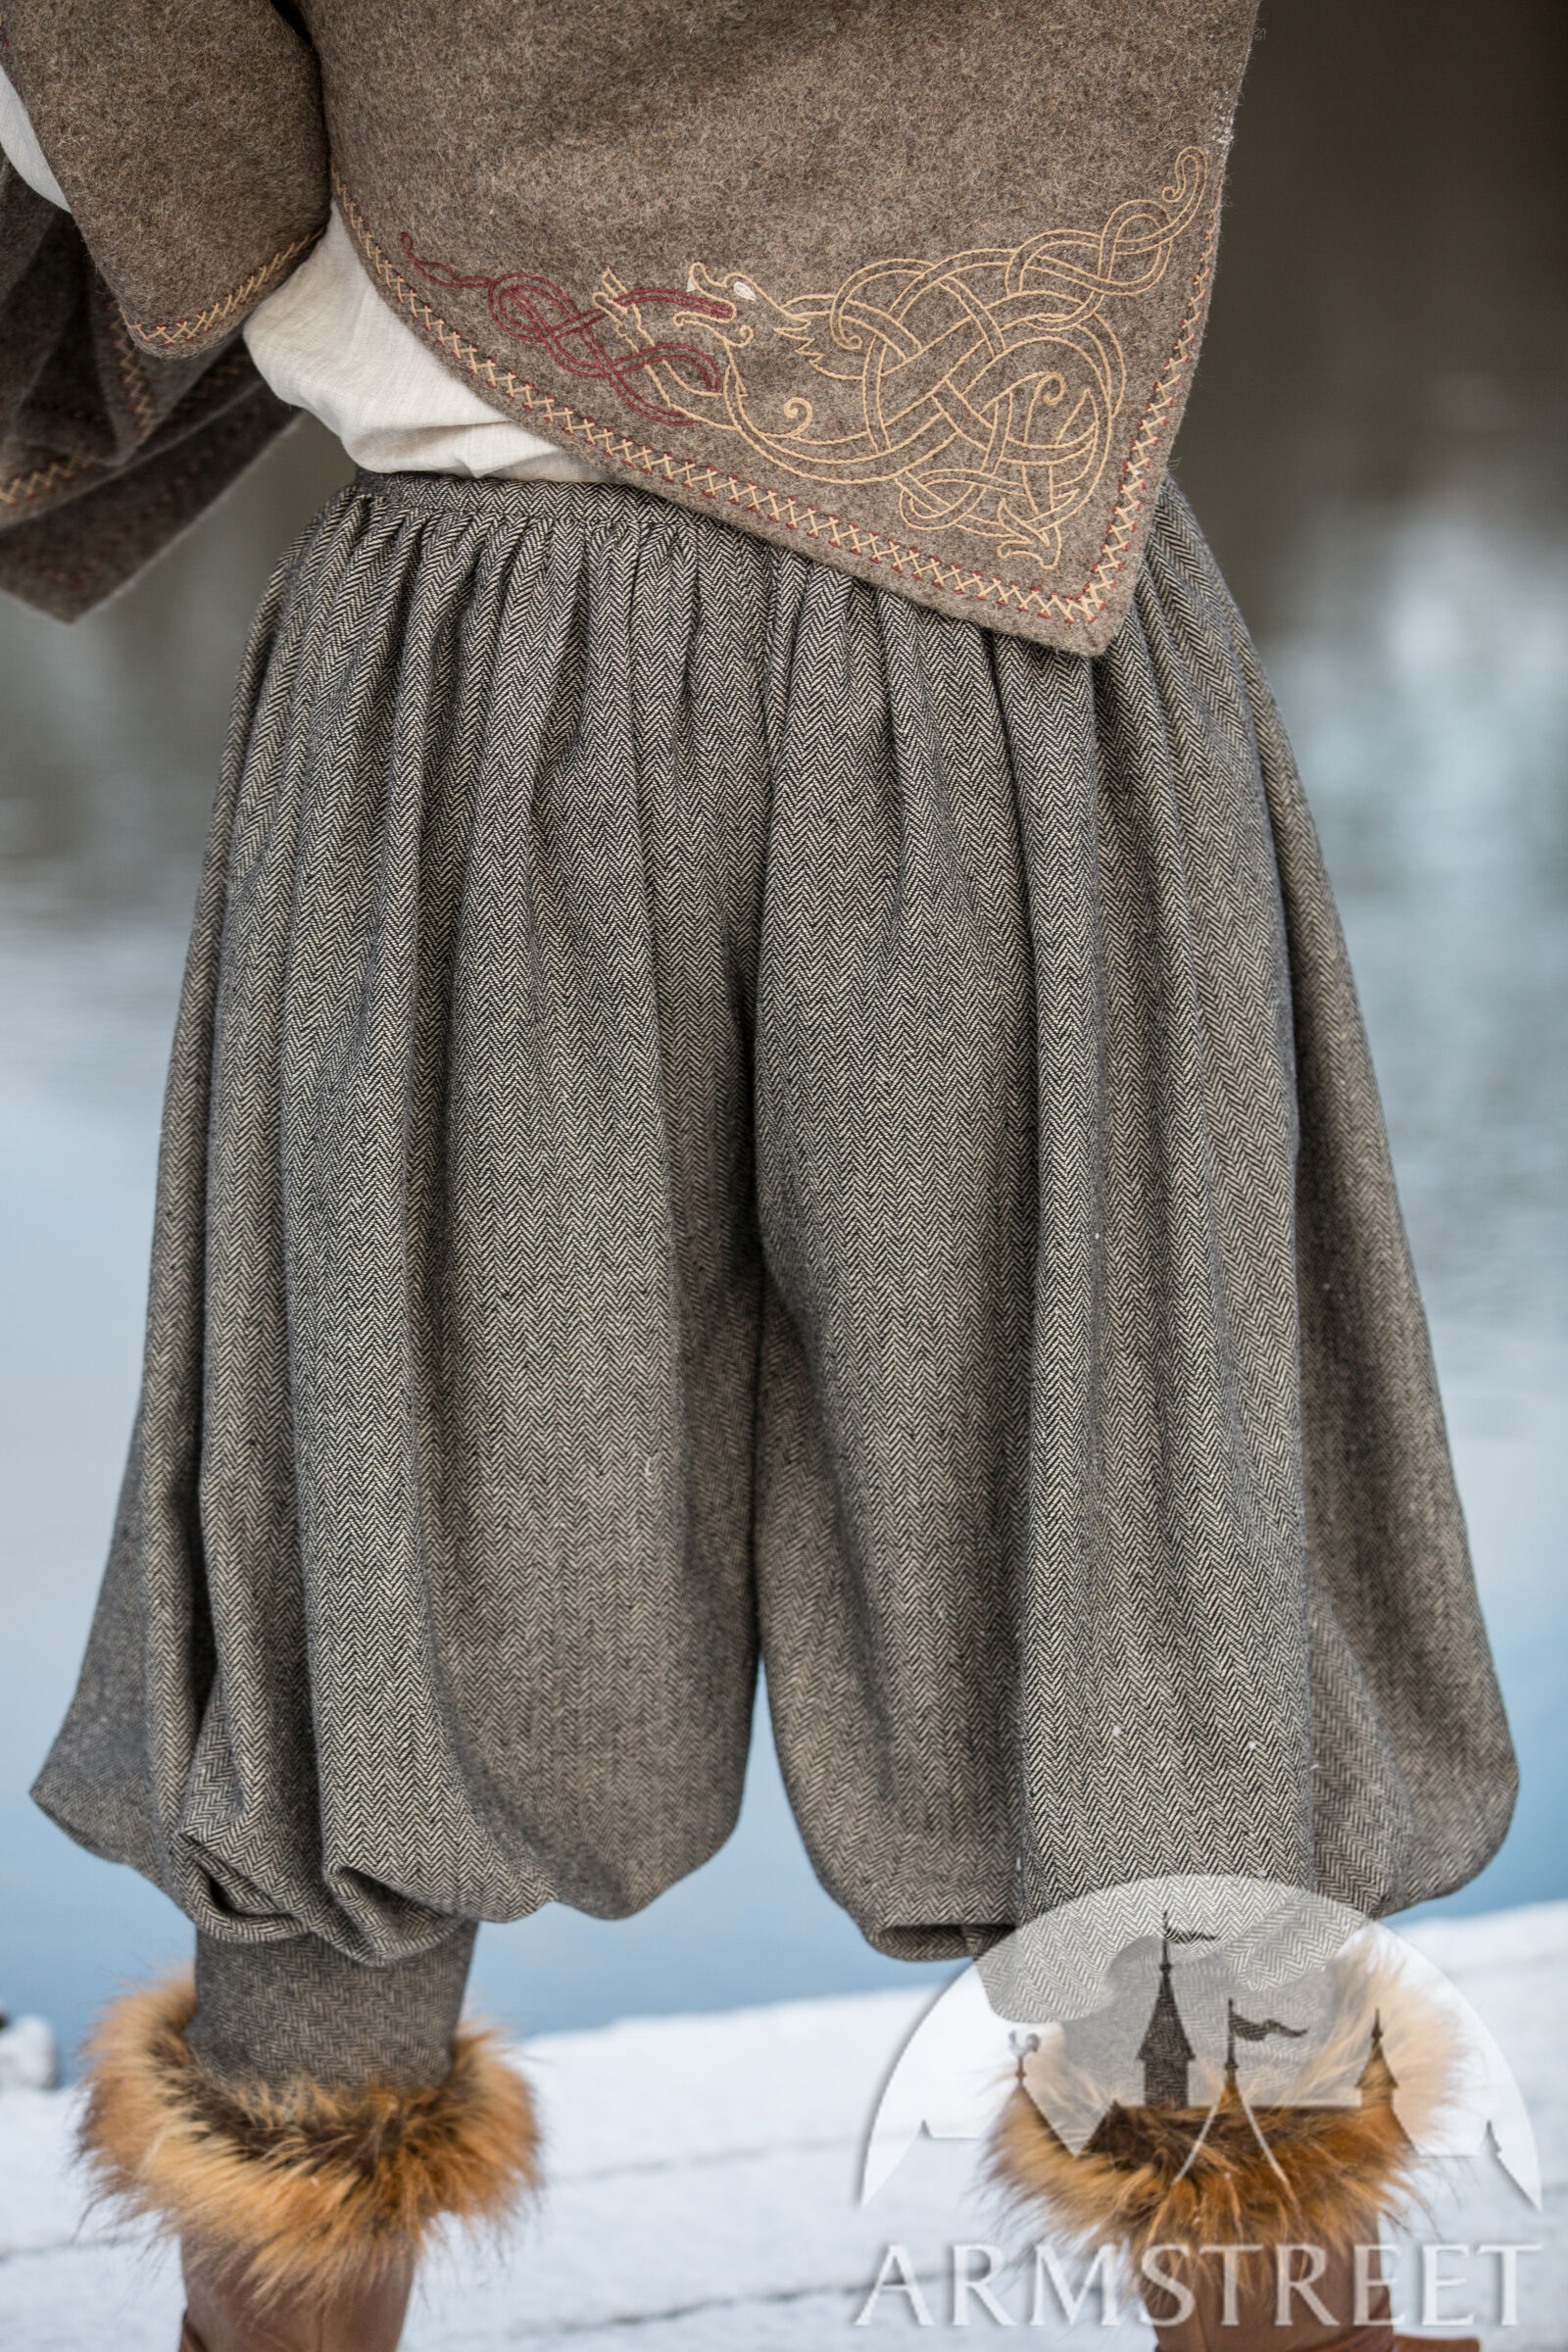 Pantalon viking en laine « Olegg le Mercenaire » à vendre